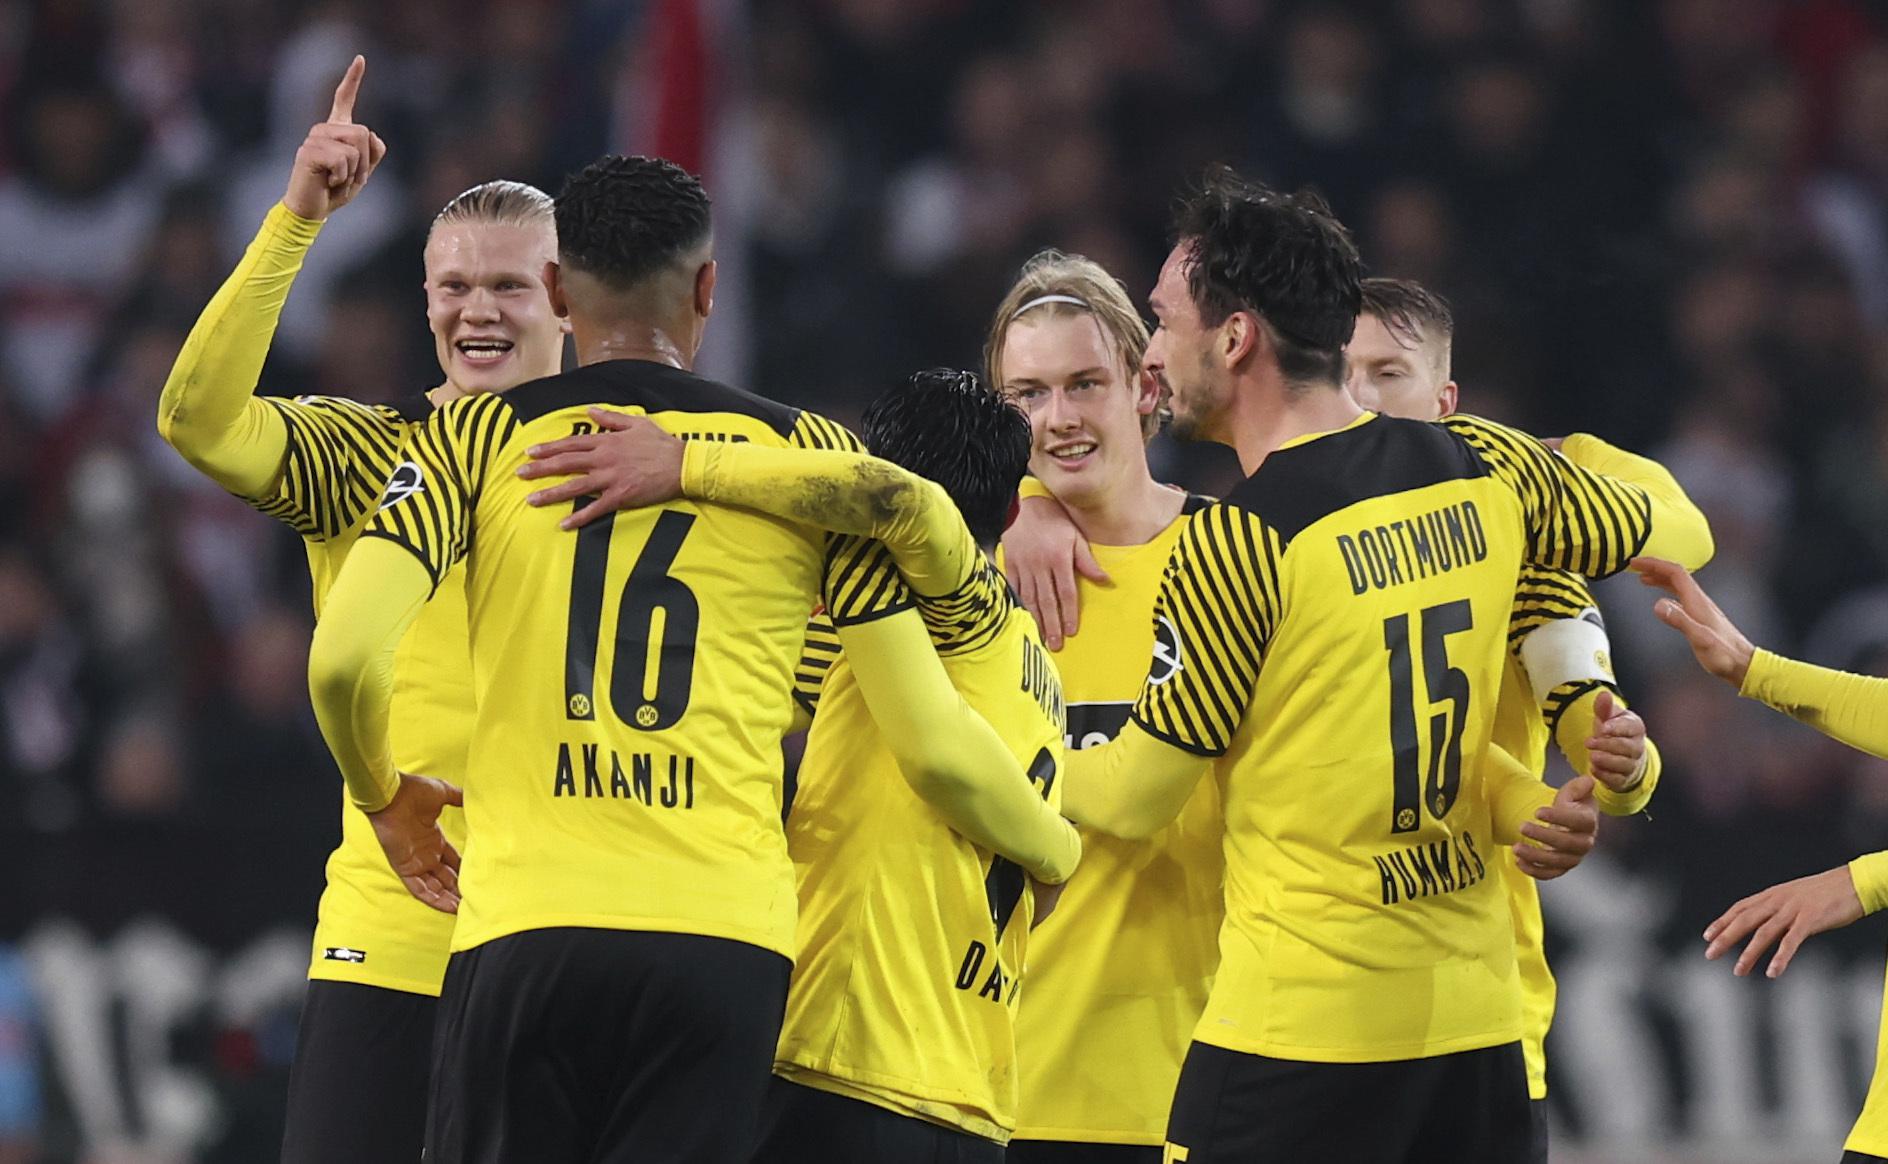 Brandt nets 2 as substitute, Dortmund beats Stuttgart 2-0